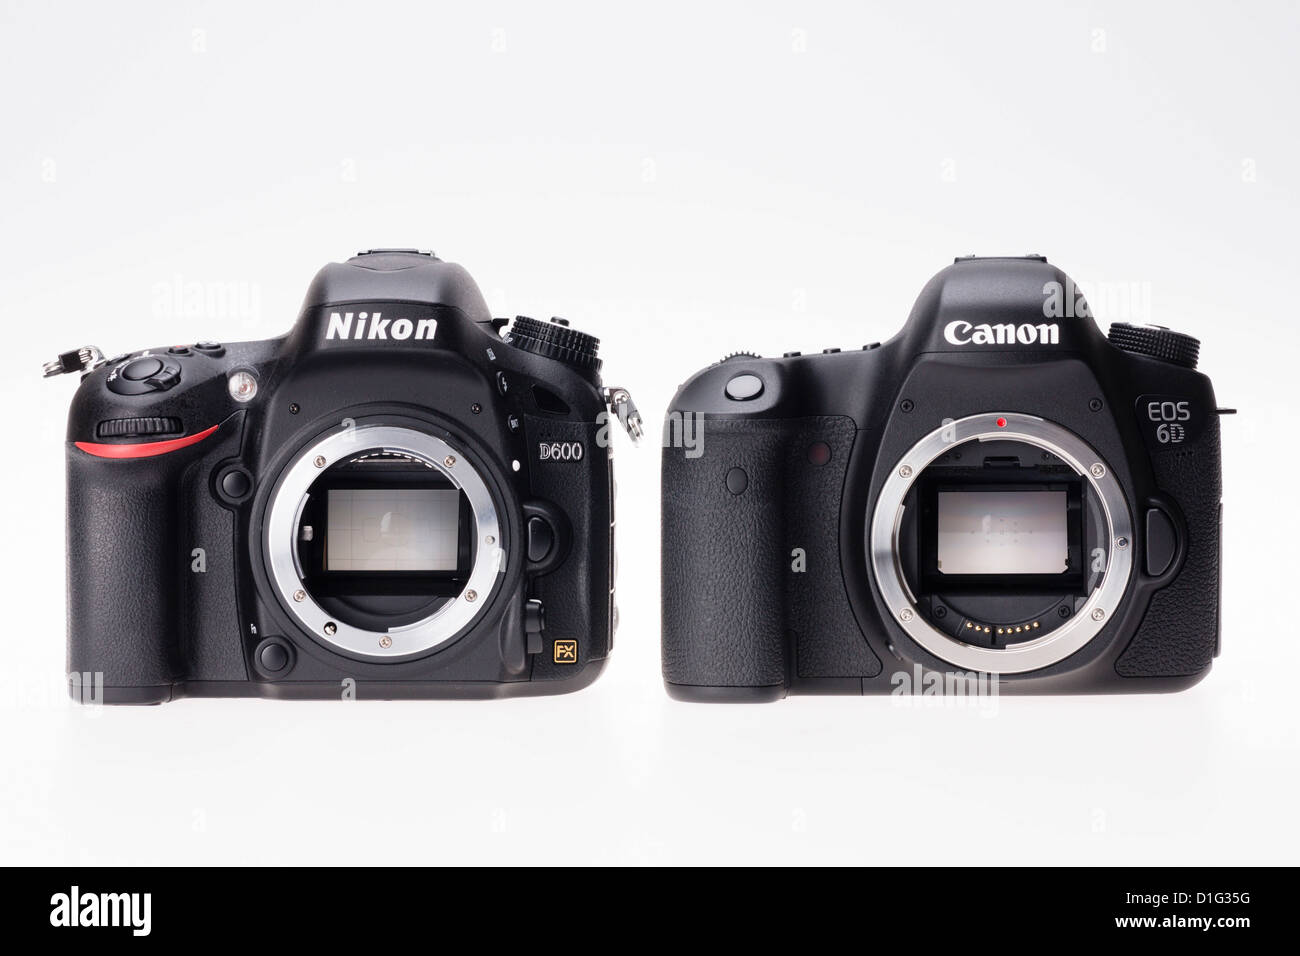 Fotoausrüstung - Preis der Nikon D600 und Canon 6D (2012) Körper nebeneinander im Wettbewerb niedrig Vollformat Camaeras. Stockfoto